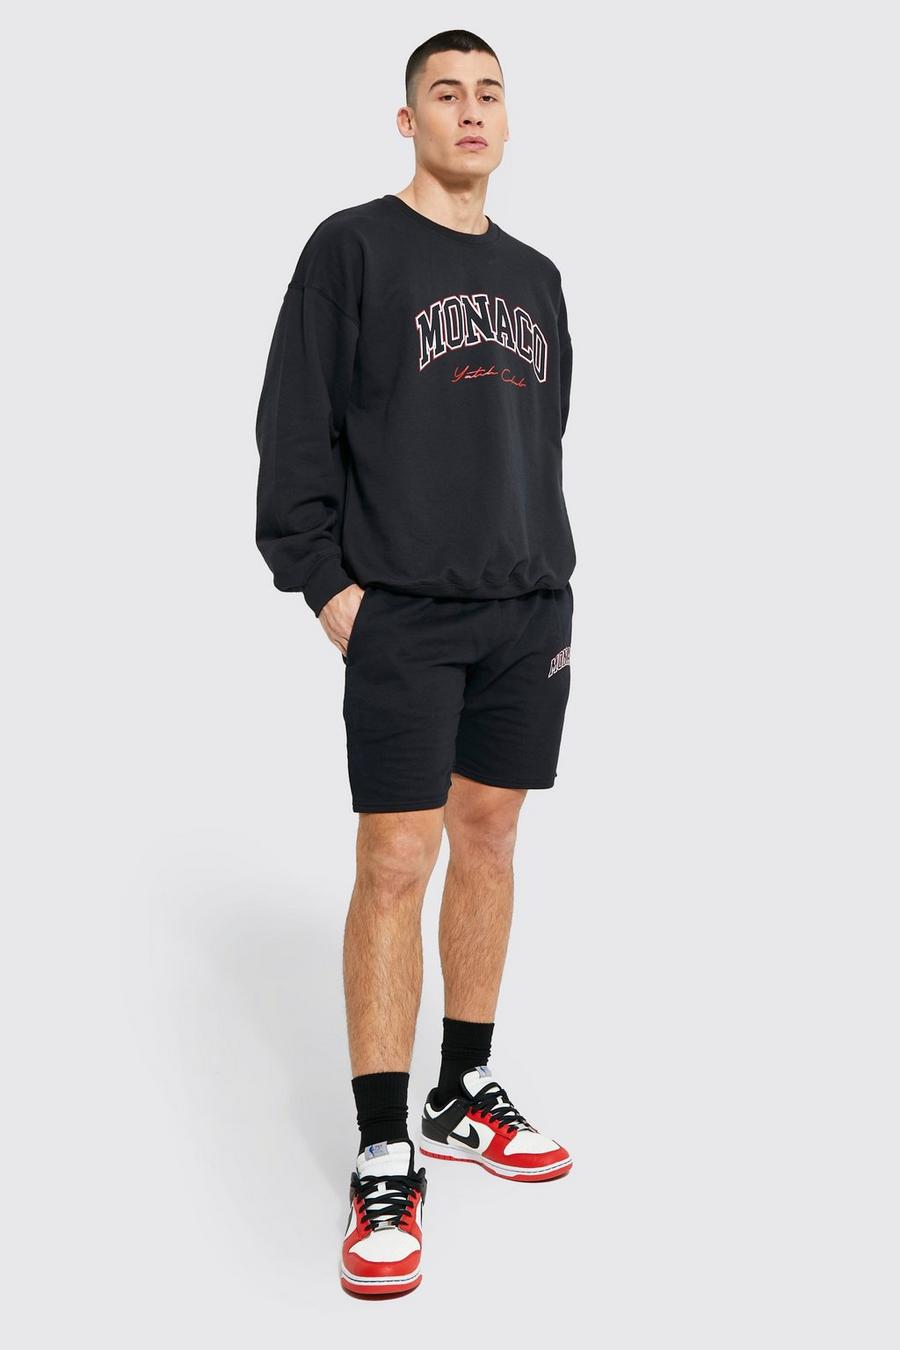 Black Oversized Monaco Sweatshirt Short Tracksuit